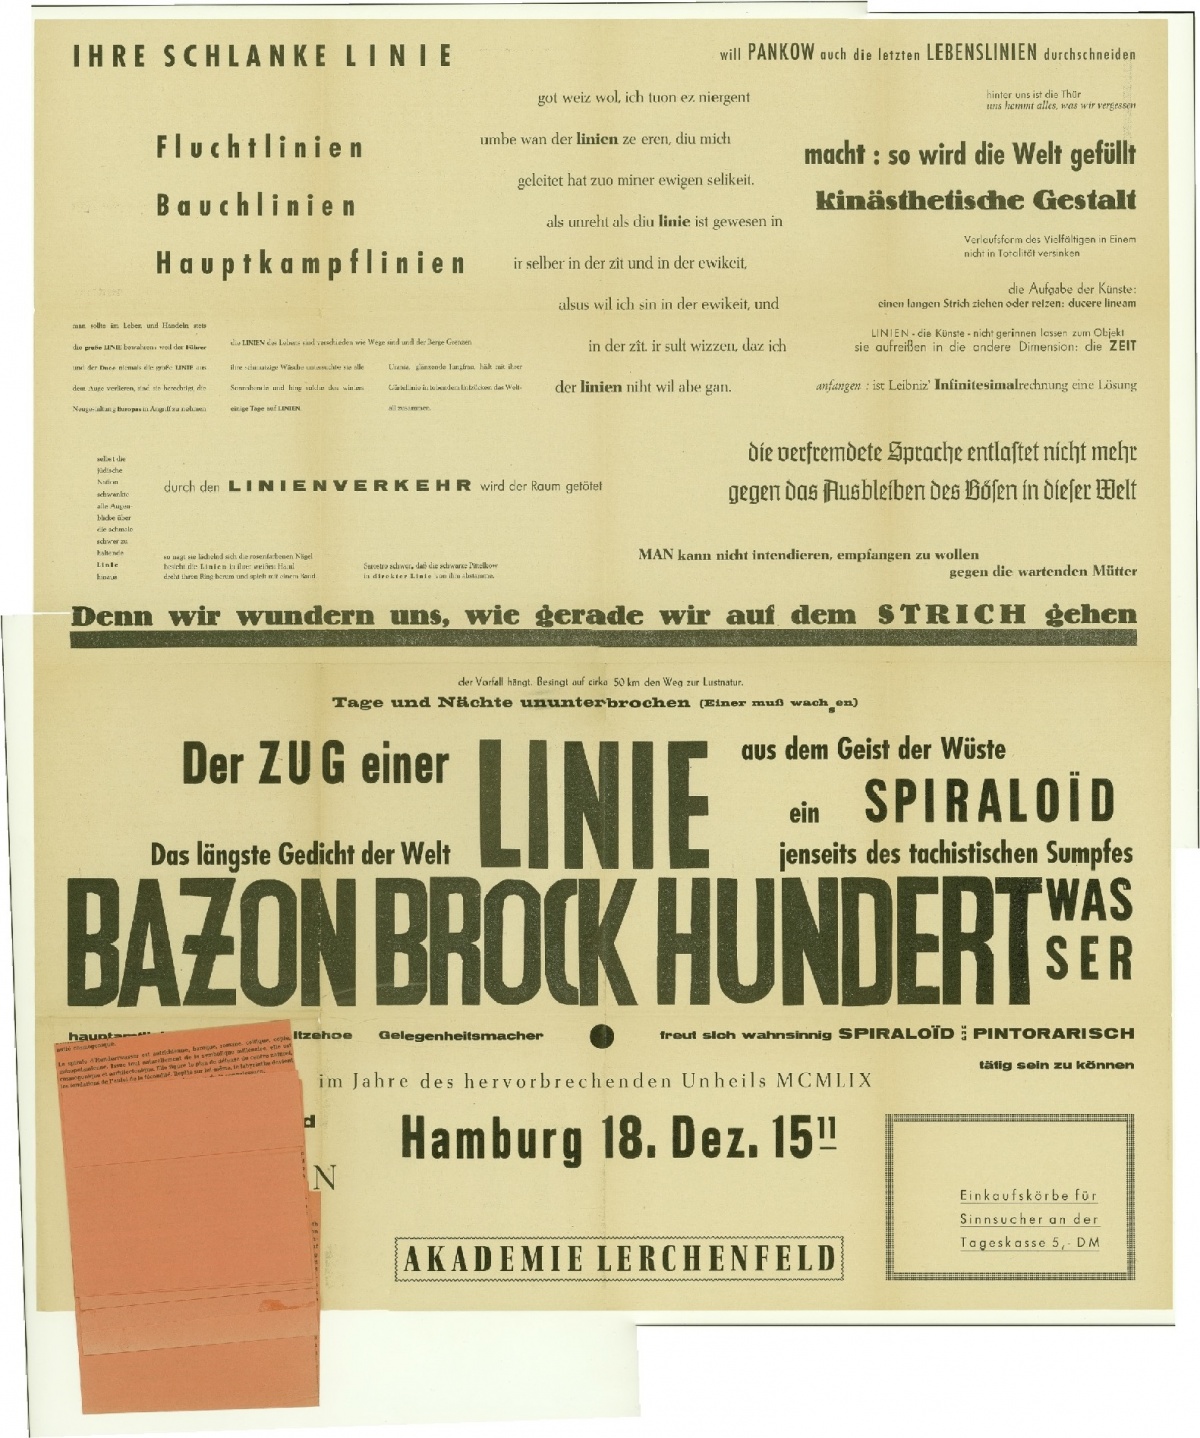 Plakat zur Hamburger Linie von Bazon Brock und Friedensreich Hundertwasser mit angehängtem Textleporello, 1959, Bild: Foto © Barbara von Woellwarth.